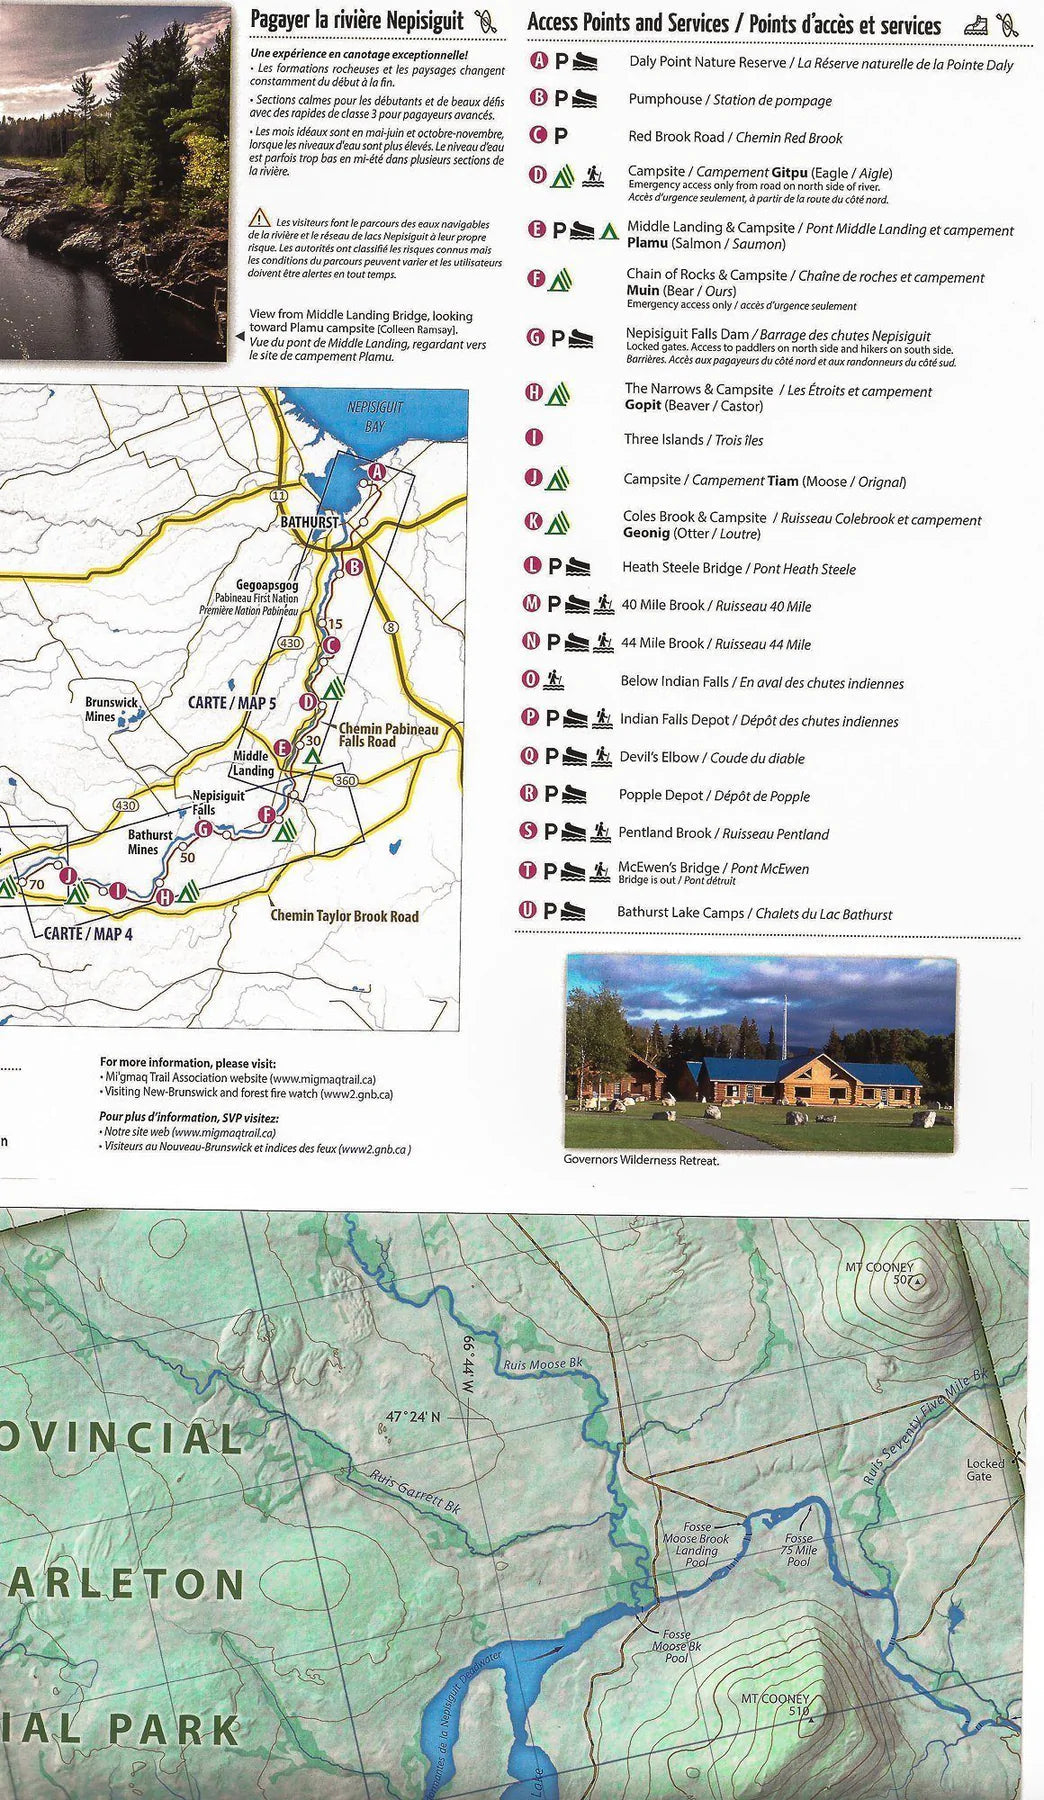 Carte de randonnée pédestre et de canotage du sentier et de la rivière Nepisiguit Mi'gmaq (Nouveau-Brunswick) - Mi'gmaq Trail Association carte pliée Clark Geomatics 